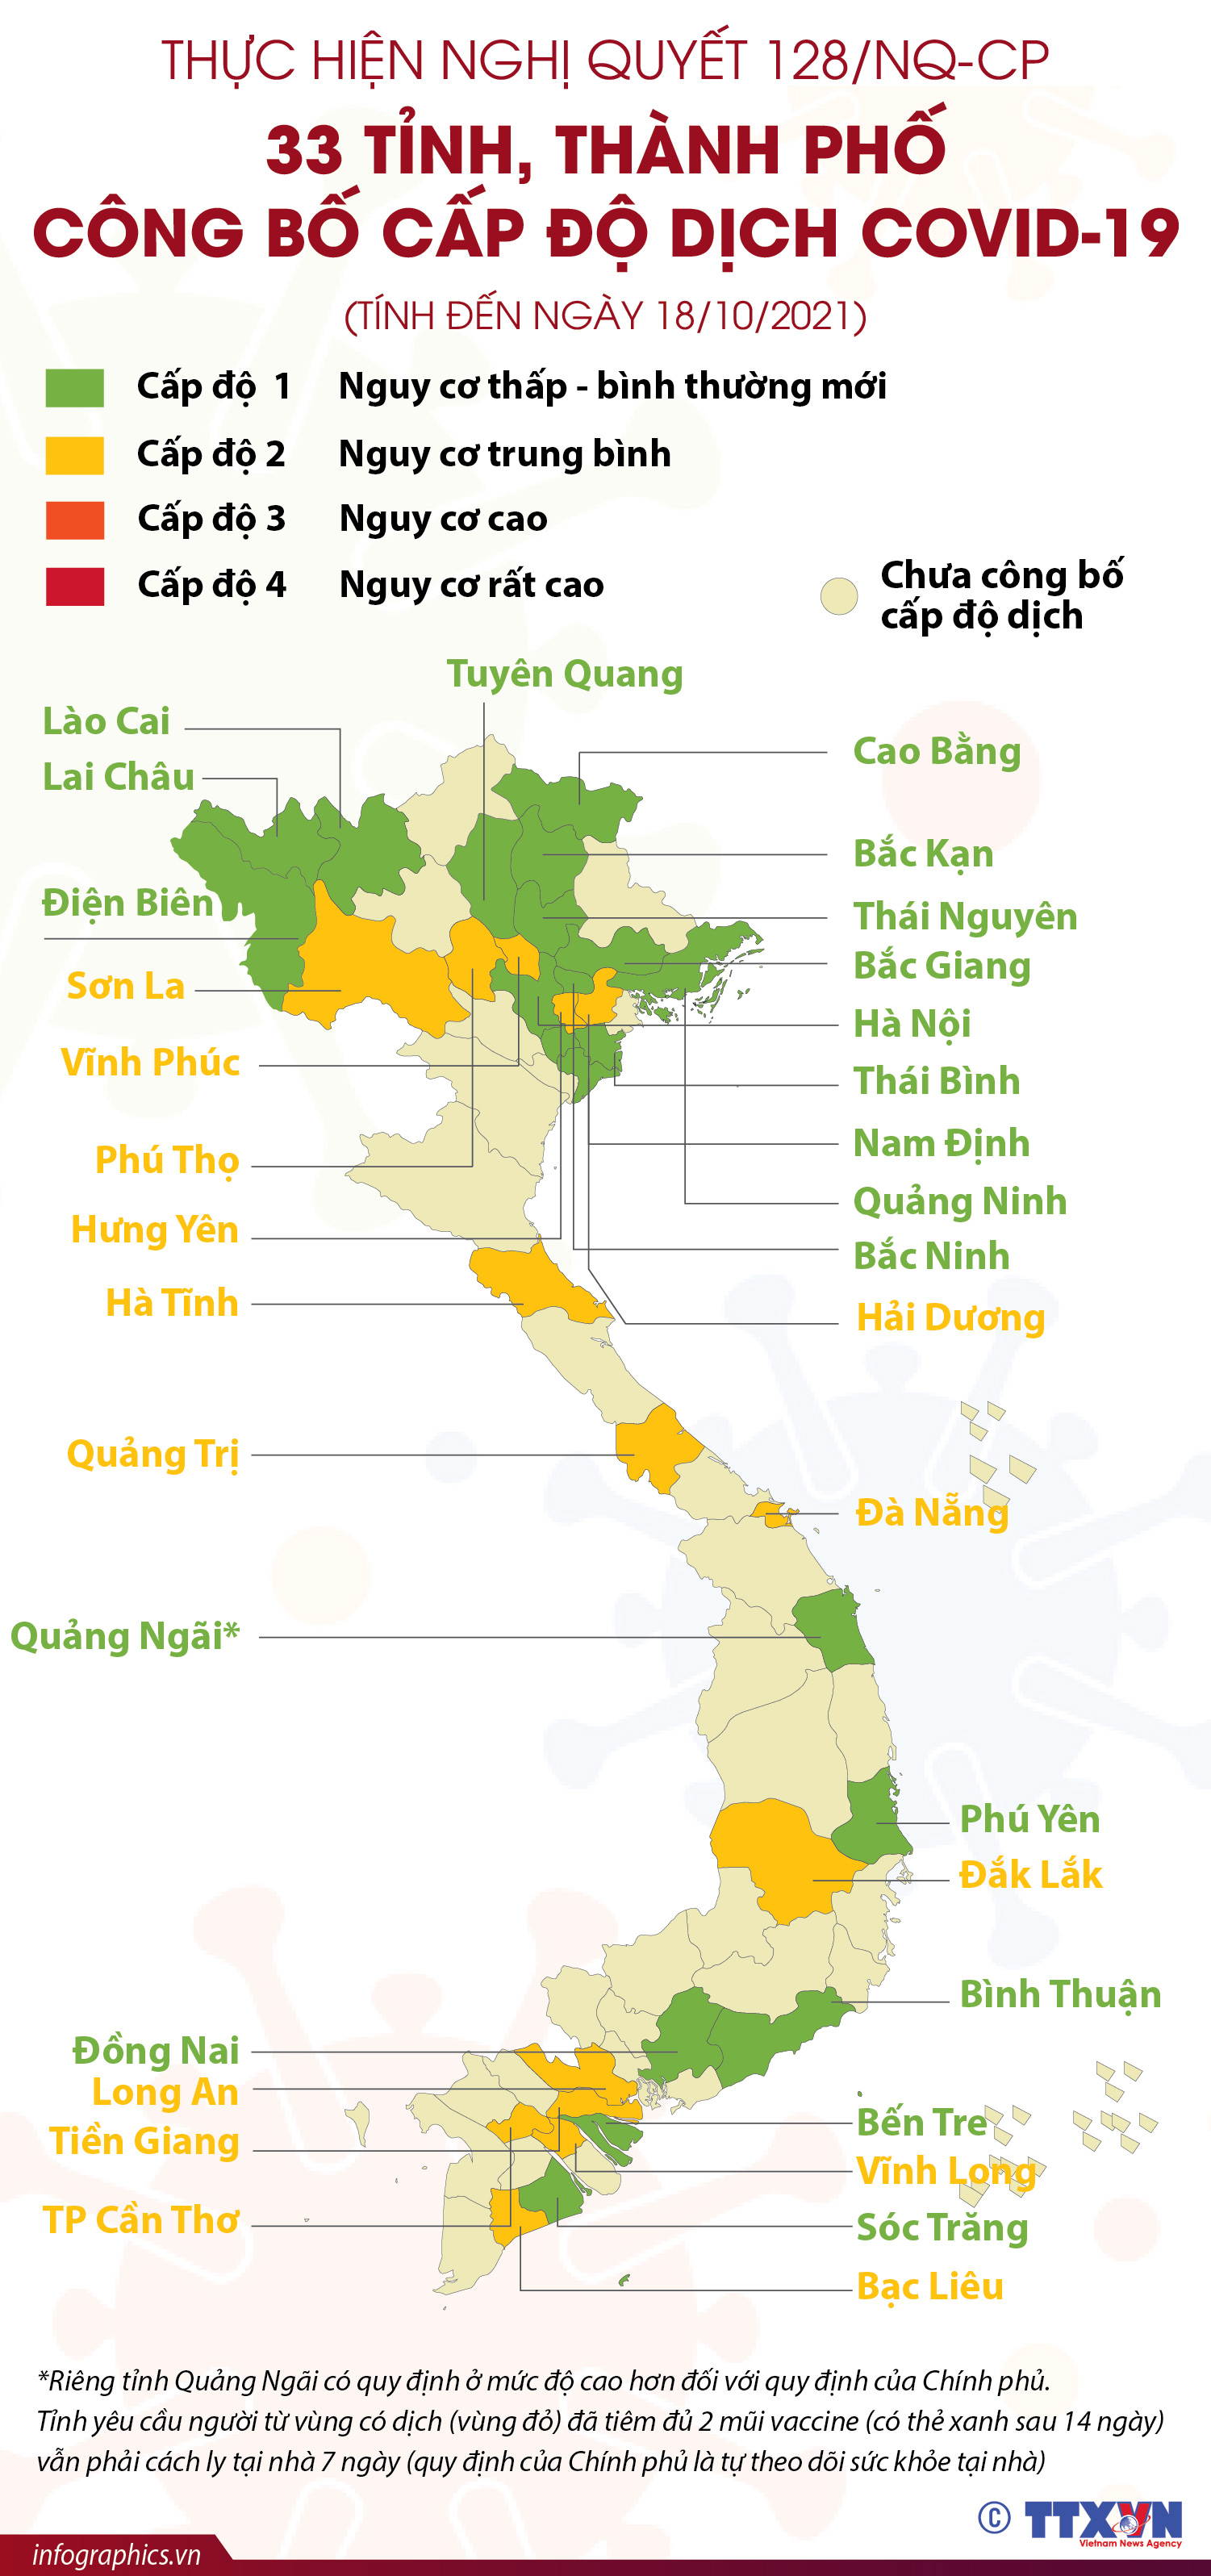 Nghị quyết 128/NQ-CP được ra đời nhằm tăng cường phát triển kinh tế ở Quảng Ninh, đặc biệt là trong lĩnh vực du lịch. Điều này đang mang lại rất nhiều cơ hội cho các doanh nghiệp và công dân Quảng Ninh đã và đang cống hiến cho quê hương mình.